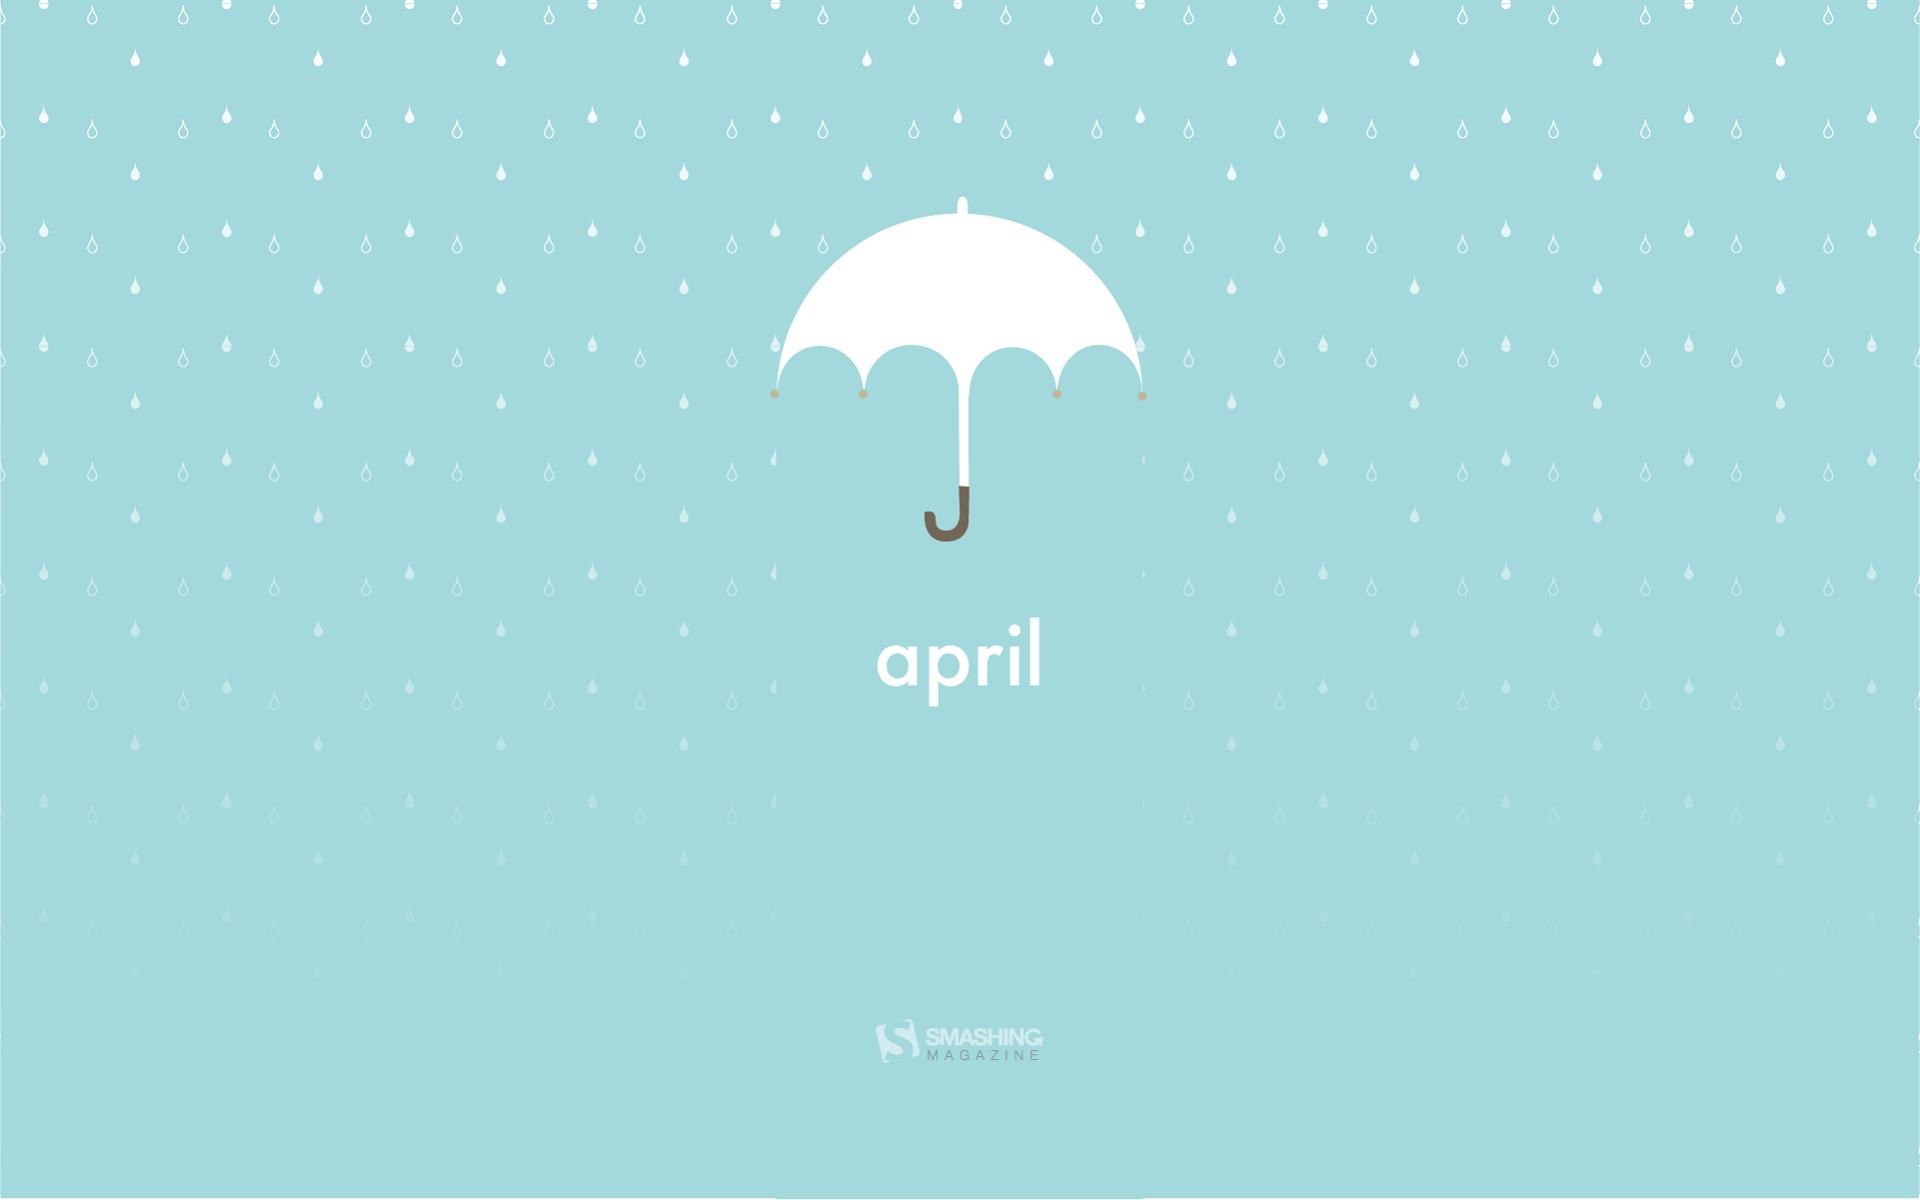 Download April Umbrella Wallpaper Free Wallpapers